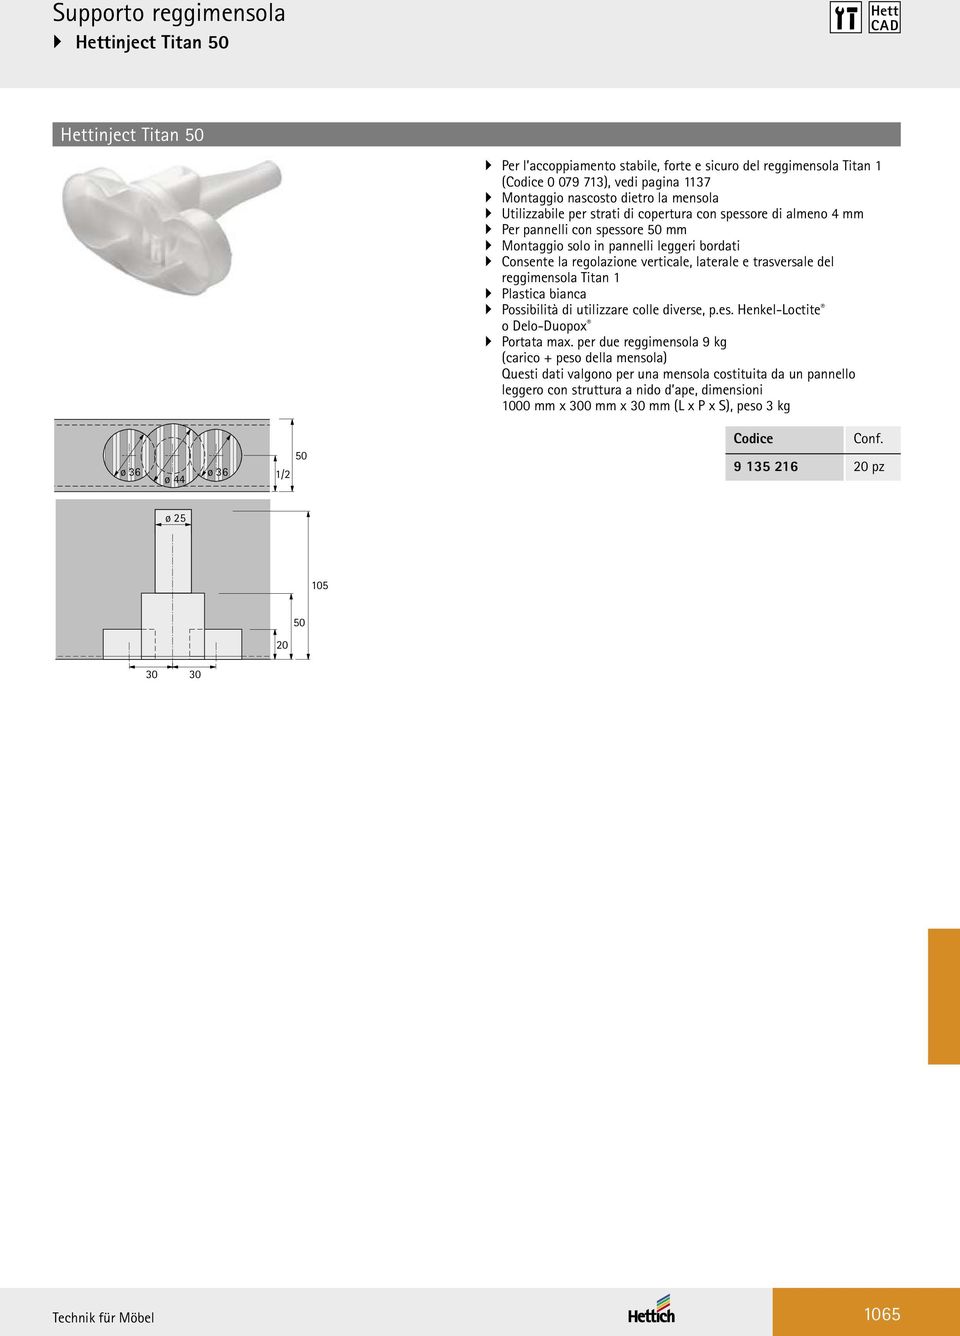 laterale e trasversale del reggimensola Titan 1 Plastica bianca Possibilità di utilizzare colle diverse, p.es. Henkel-Loctite o Delo-Duopox Portata max.